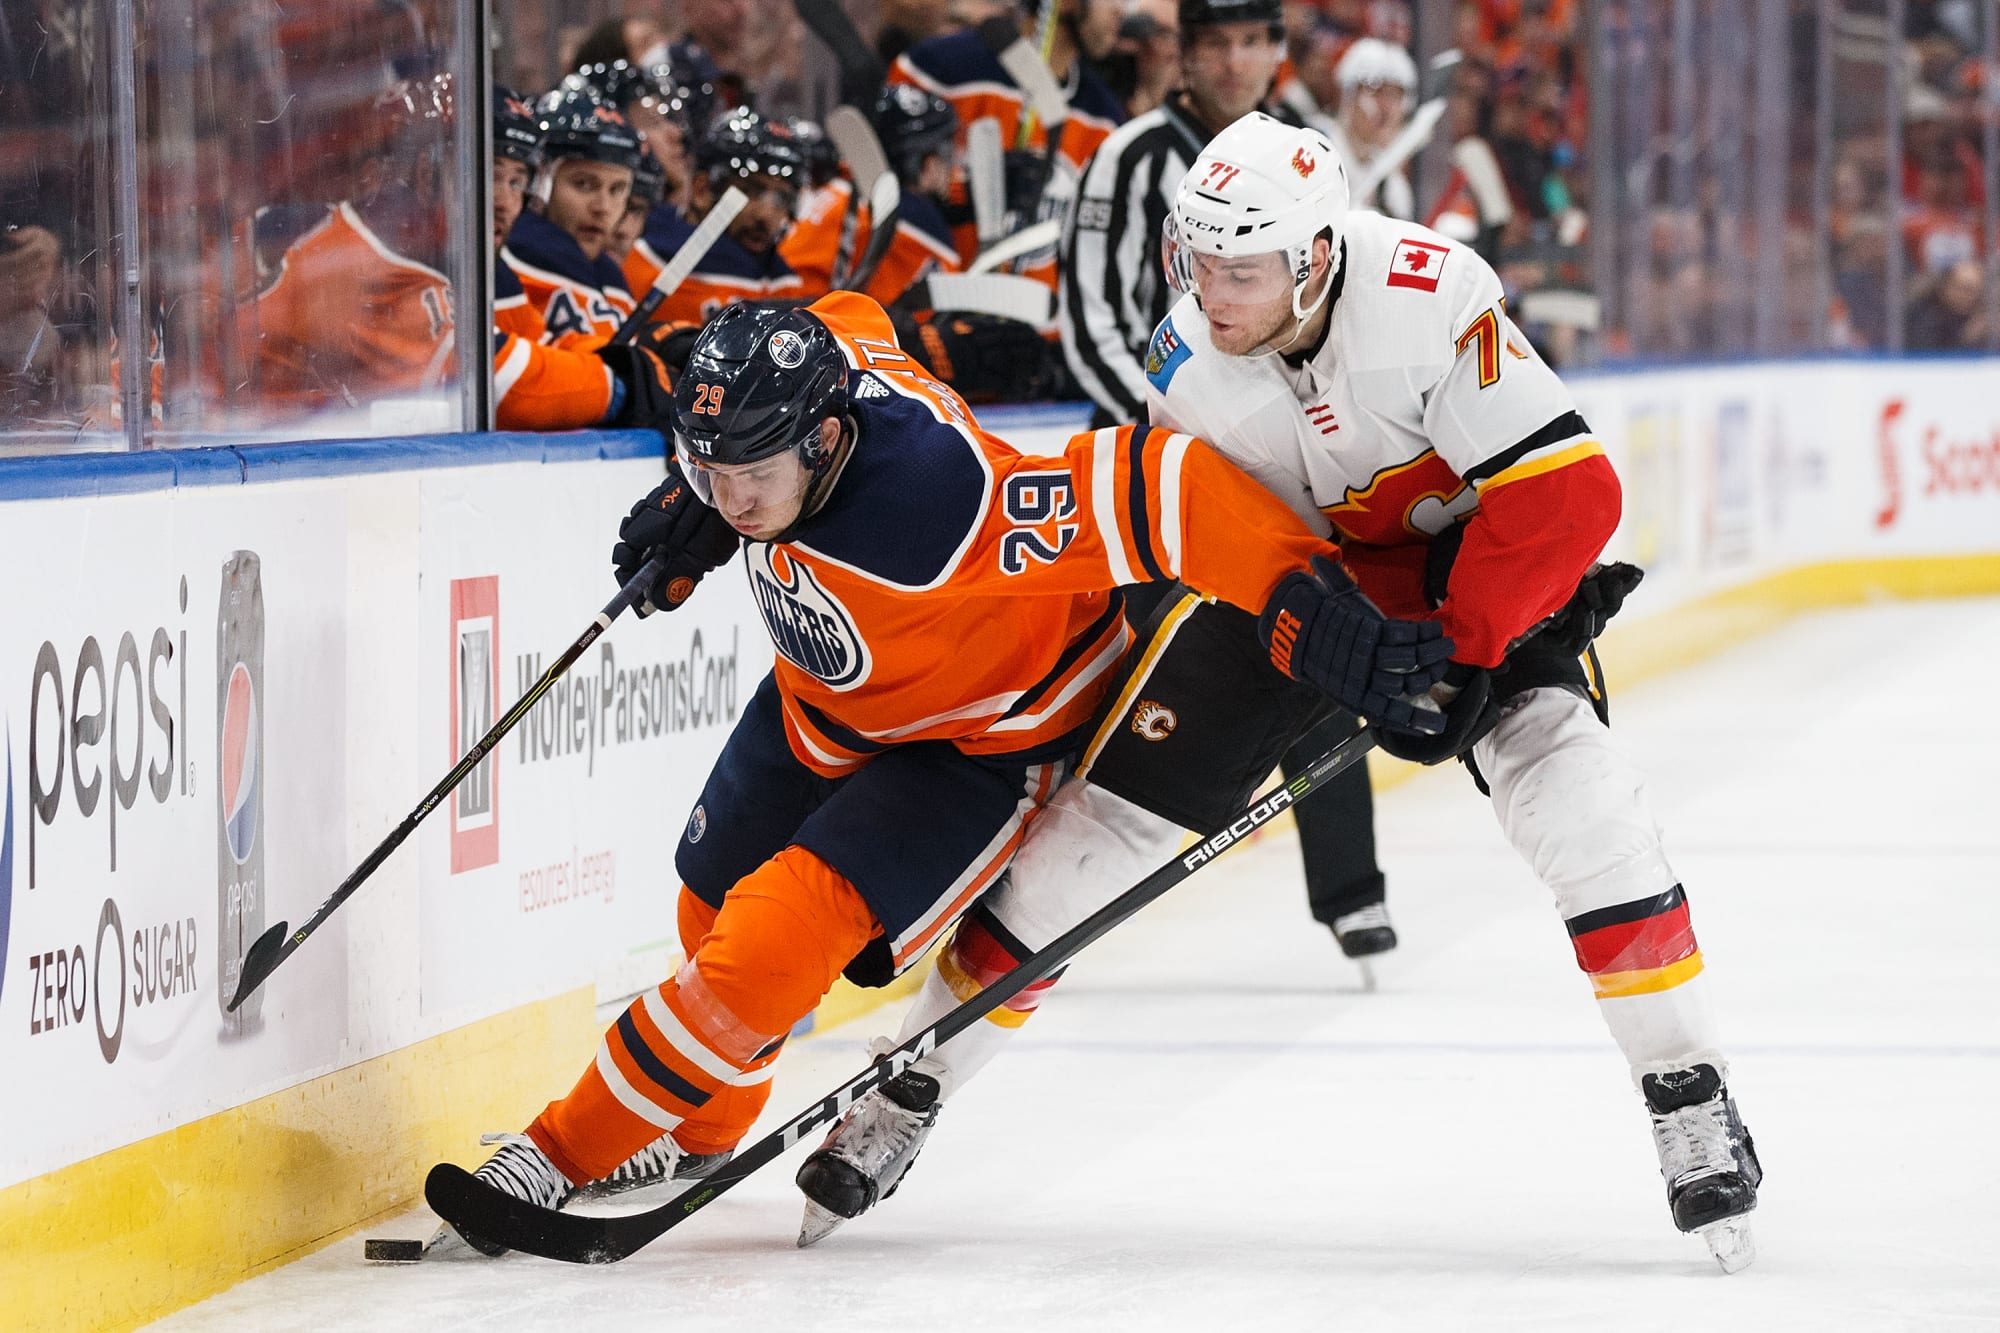 Edmonton Oilers Looking to Keep Streak Alive Against Flames